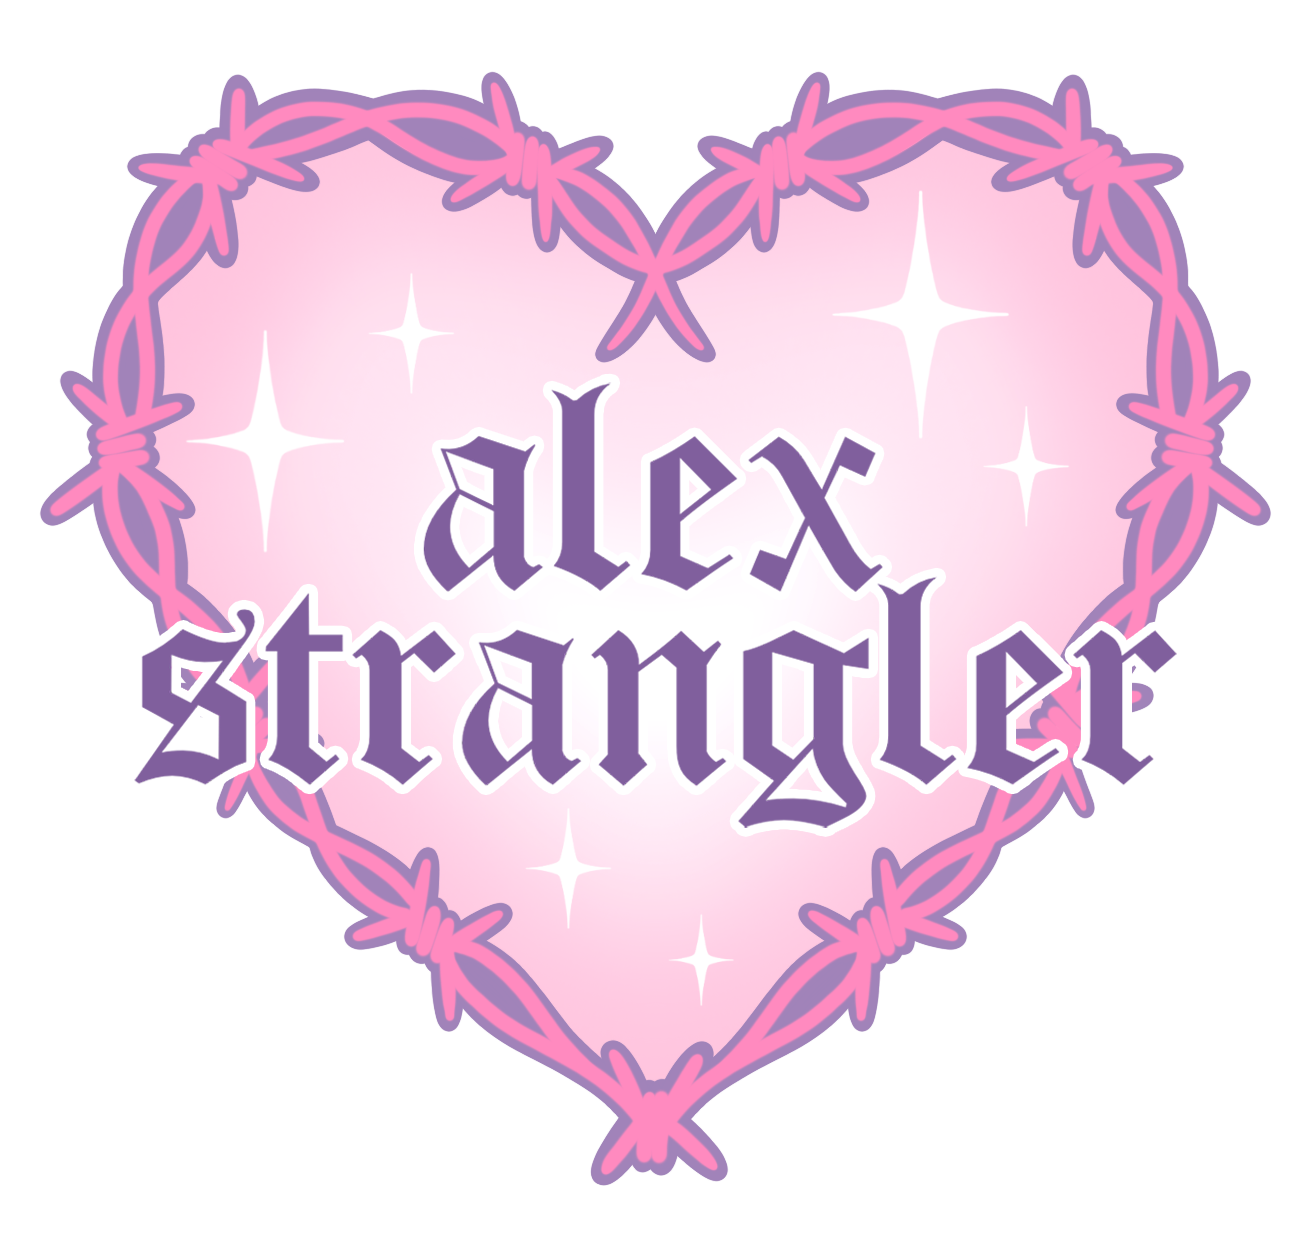 Alex Strangler